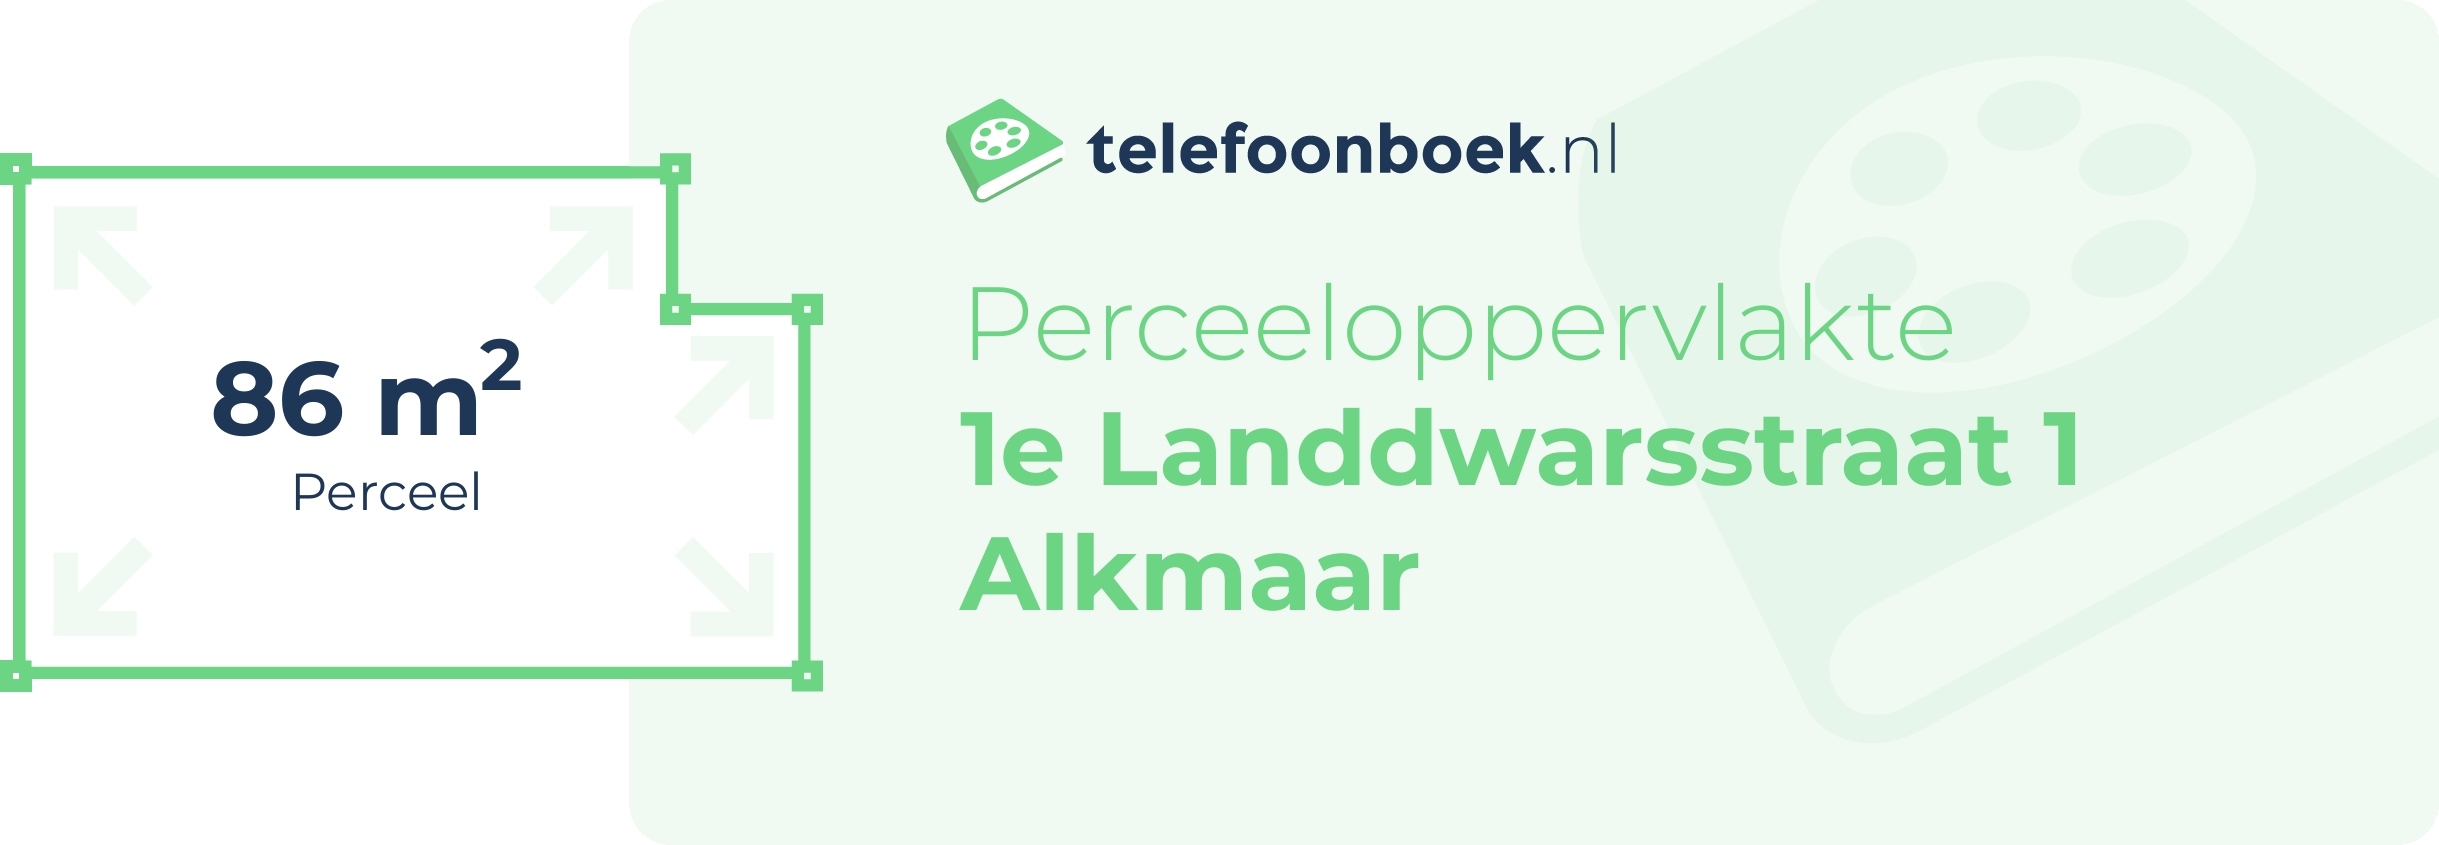 Perceeloppervlakte 1e Landdwarsstraat 1 Alkmaar